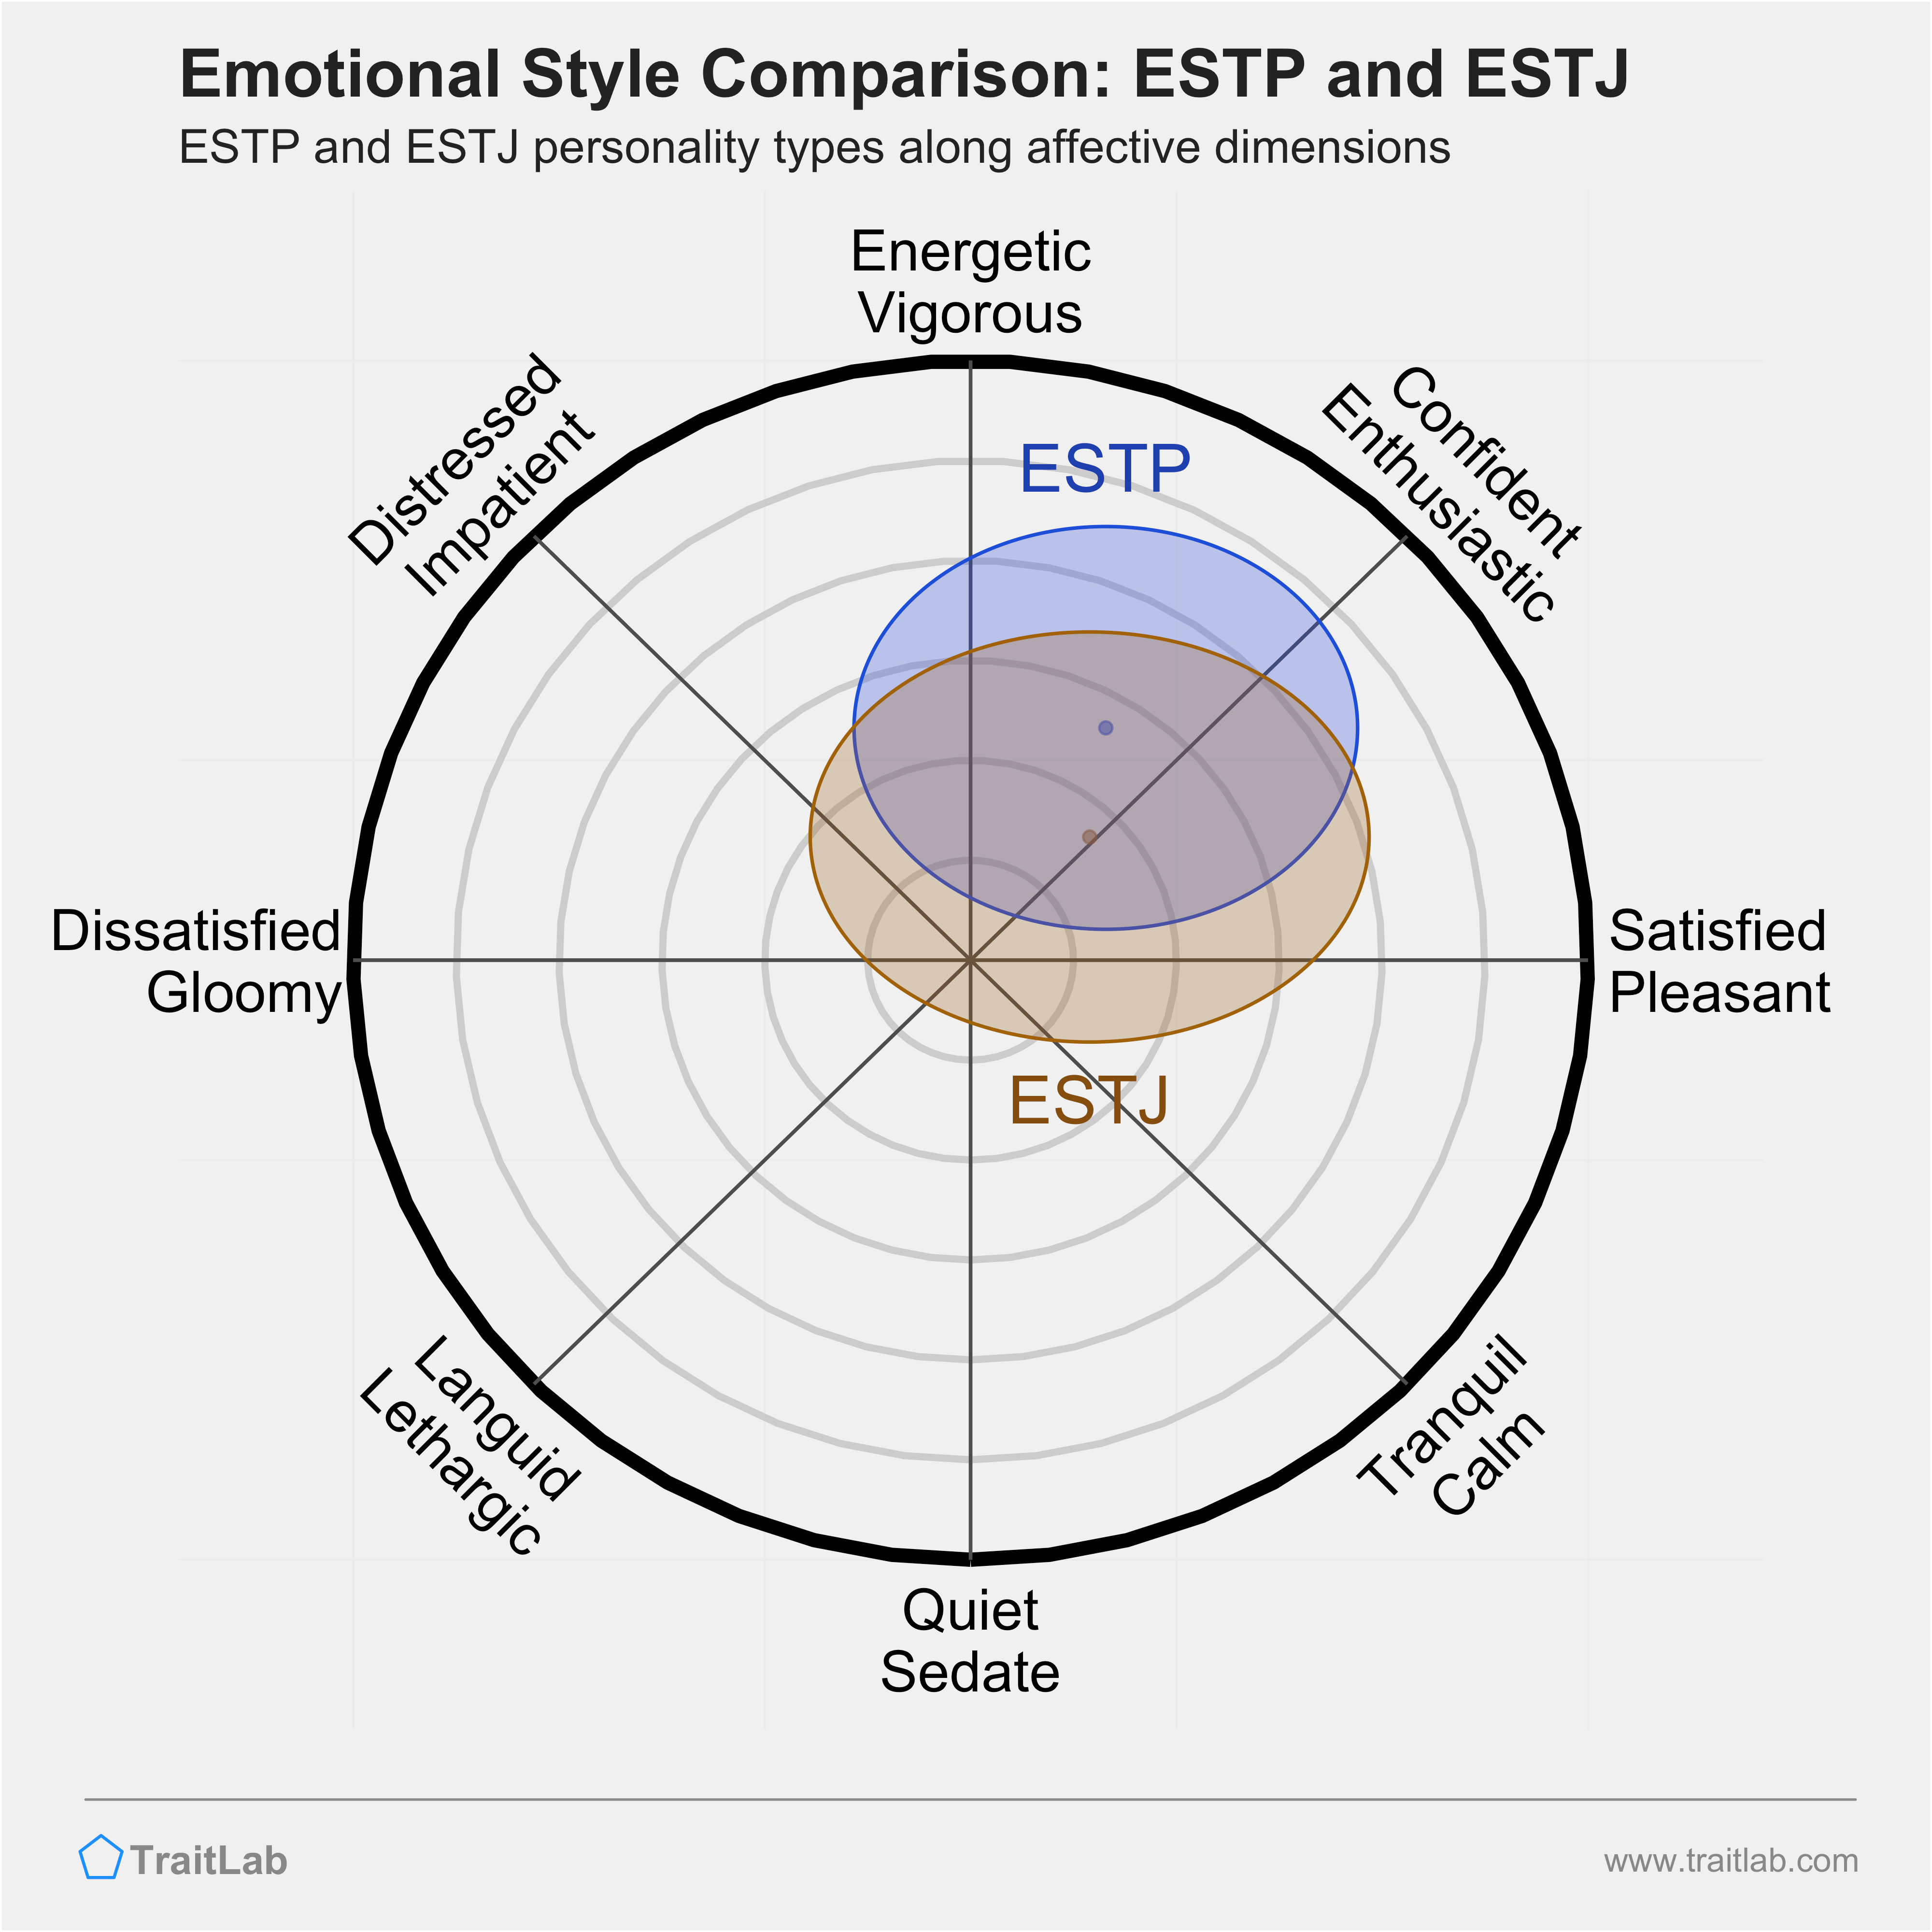 ESTP and ESTJ comparison across emotional (affective) dimensions